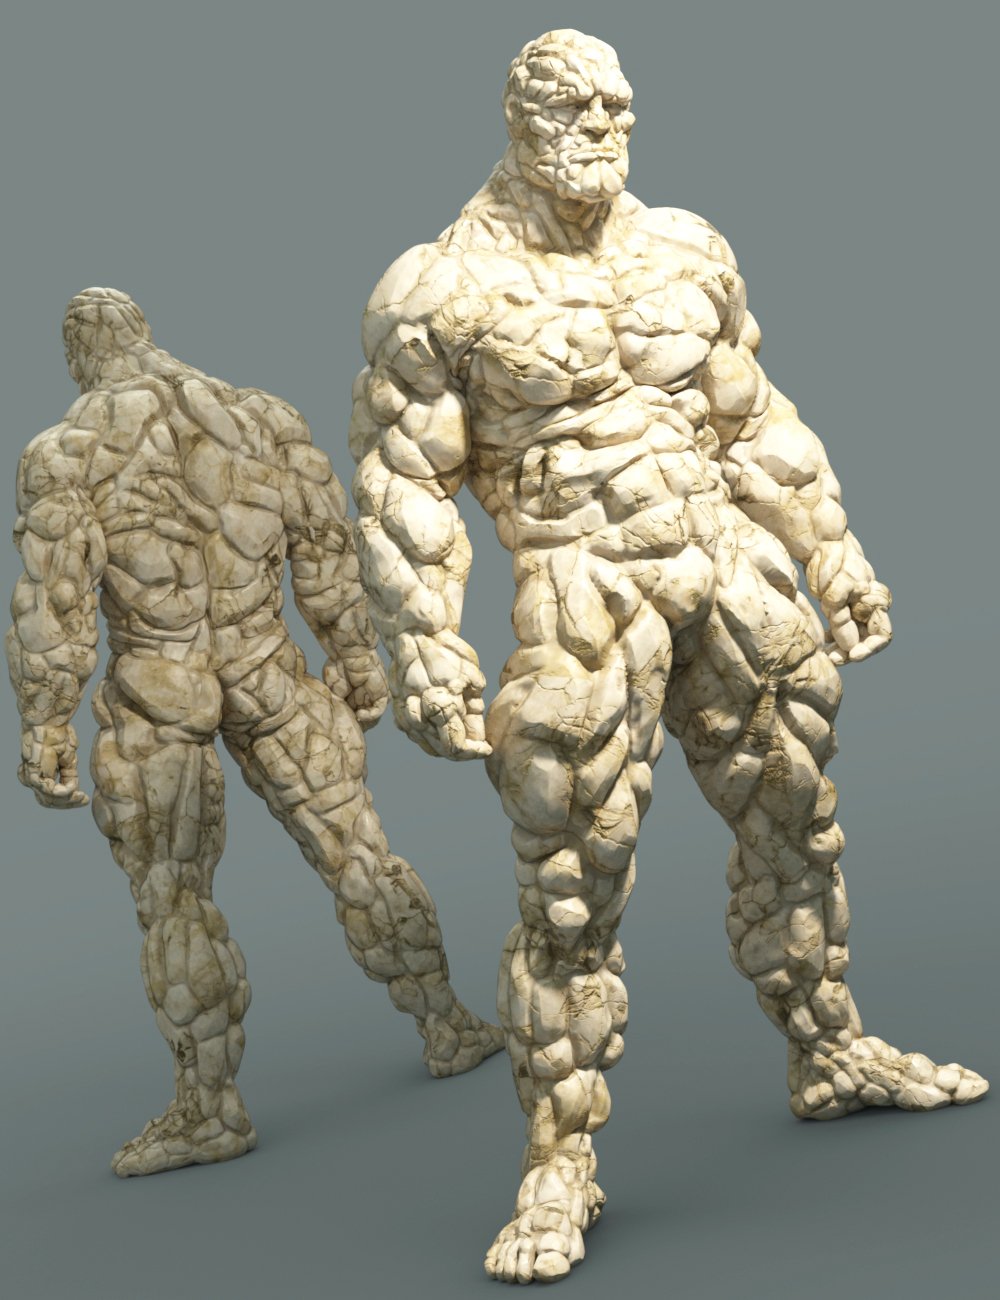 Mr Rubble HD for Brute 8 by: JoeQuick, 3D Models by Daz 3D